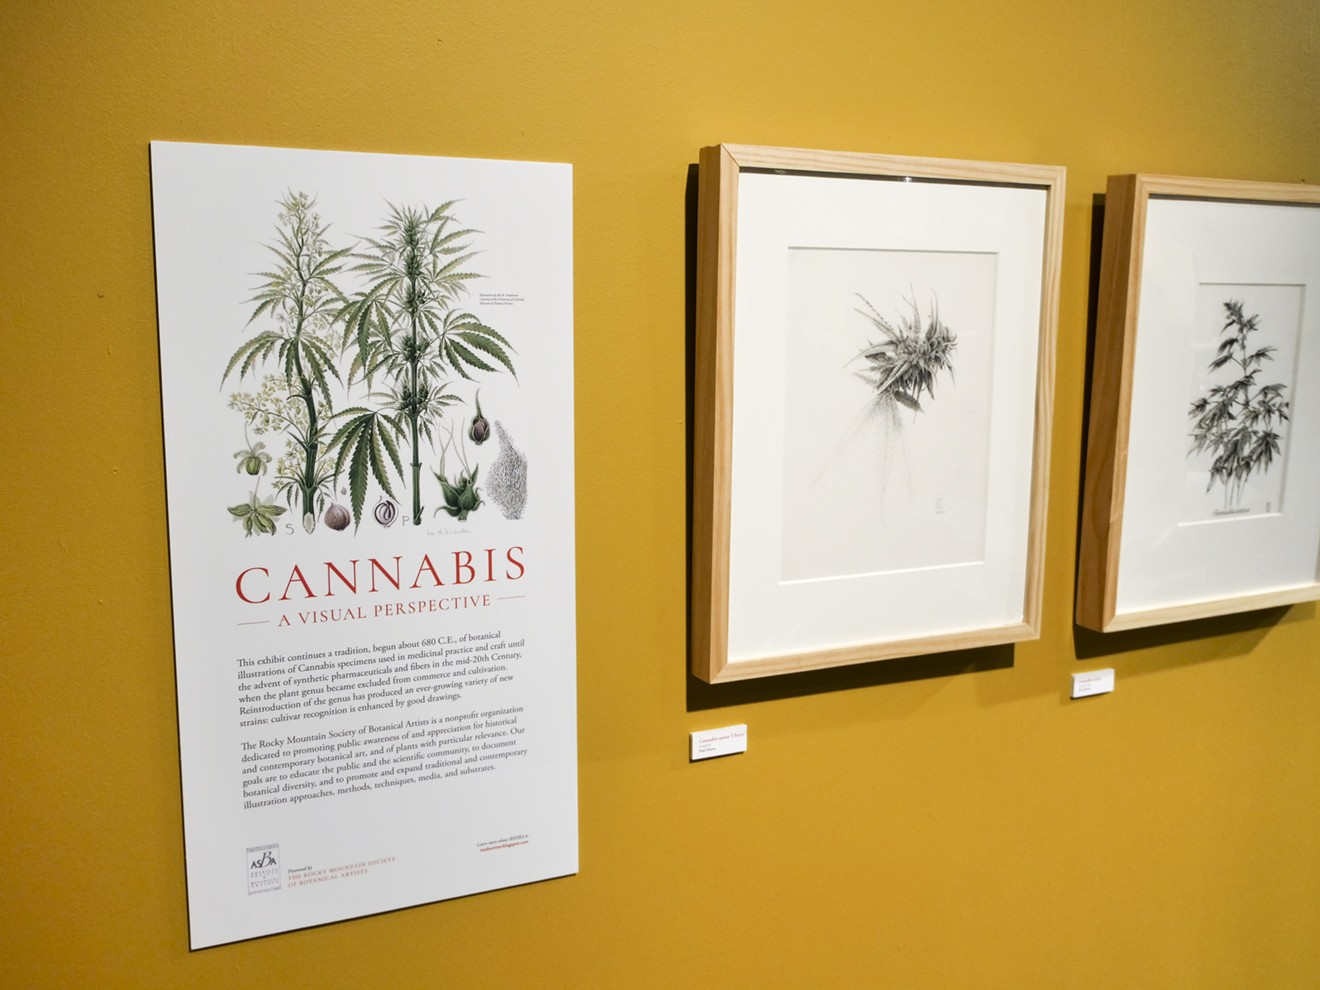 Cannabis: A Visual Perspective runs through May 20.